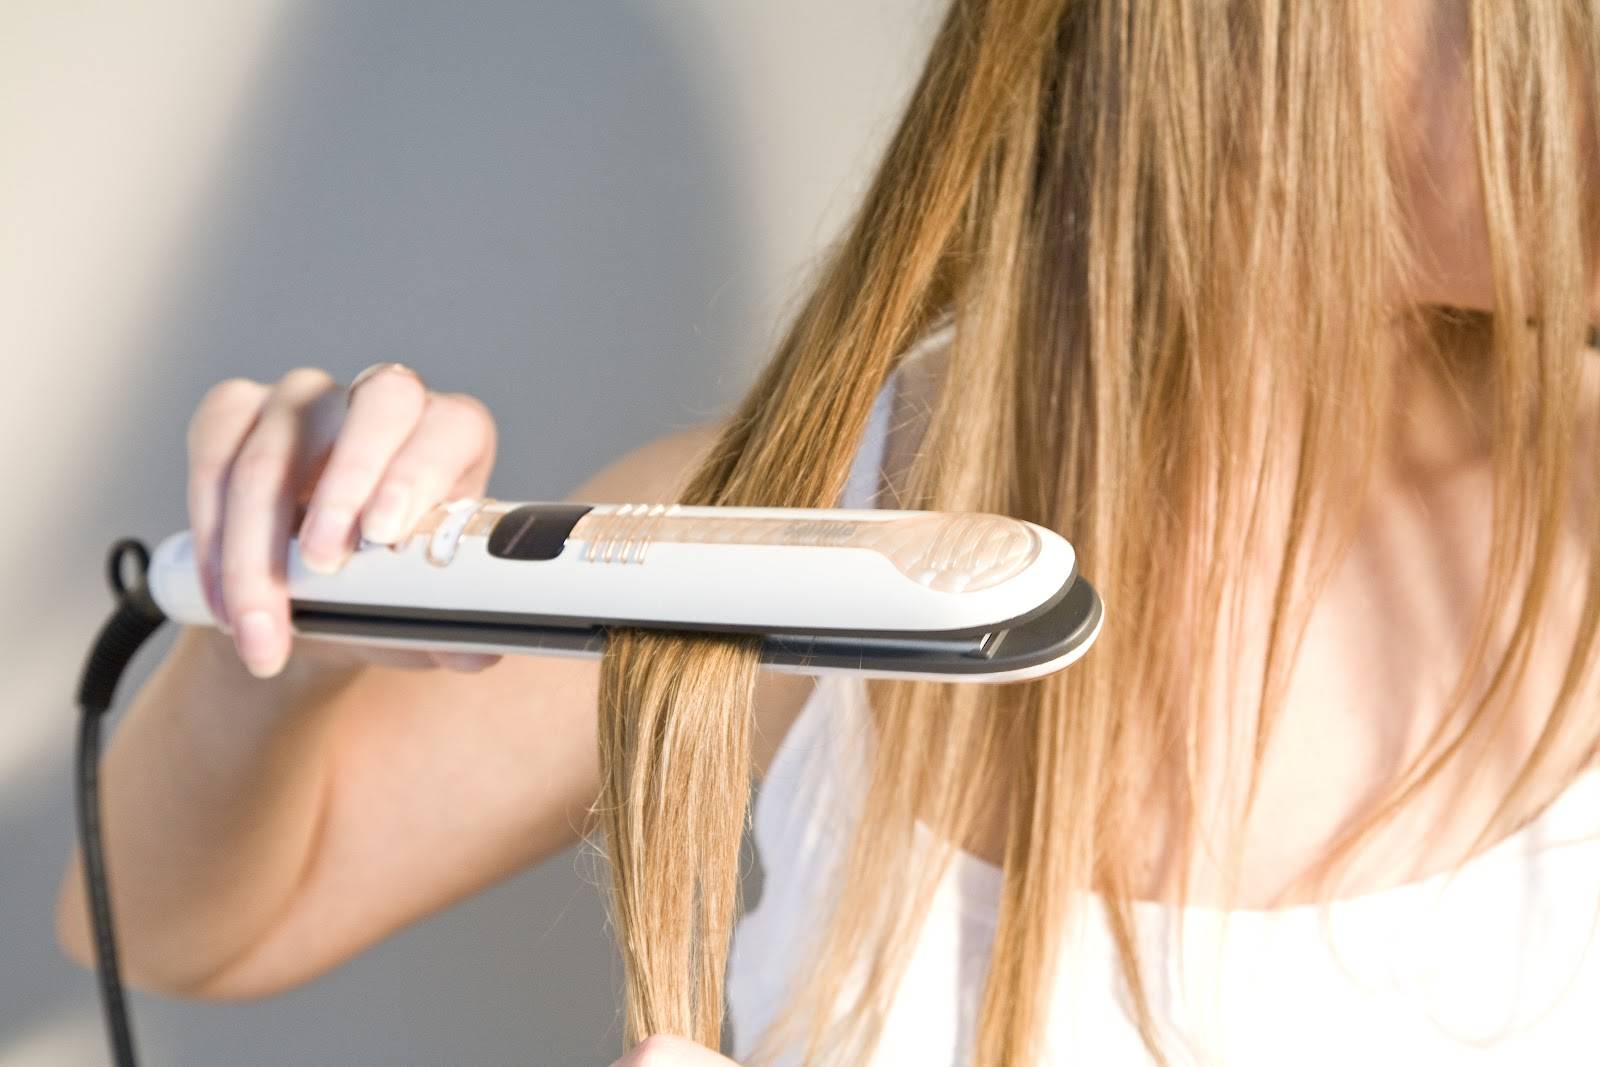 Как выпрямить волосы с помощью фена и расчески, как правильно вытянуть волосы феном, выпрямление волос